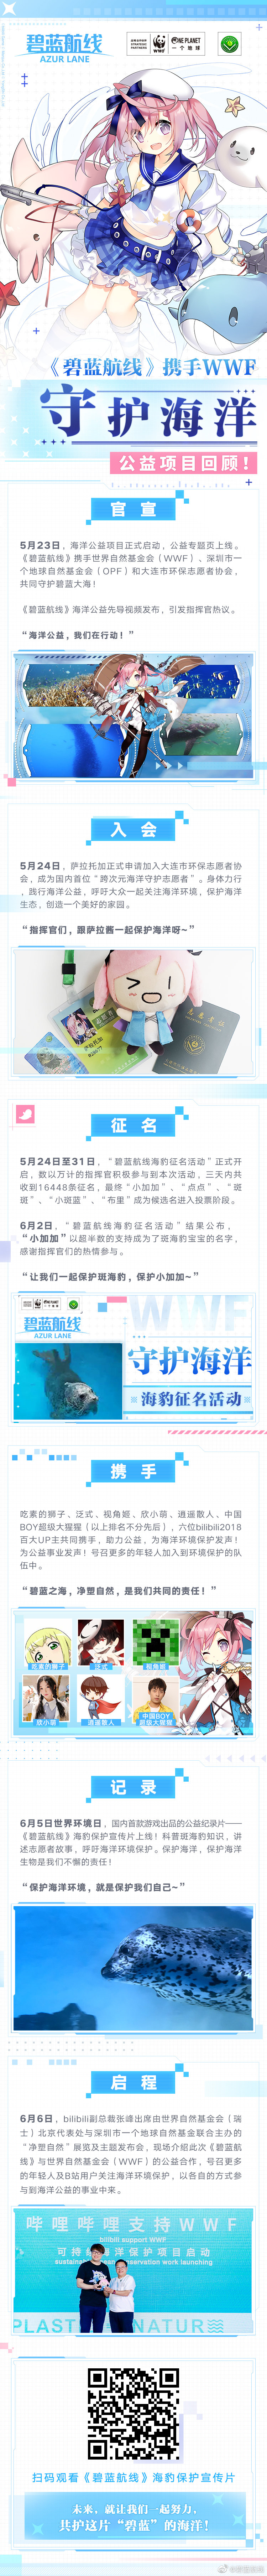 《碧蓝航线》官方WWF联动活动回顾 小加加联动换装曝光